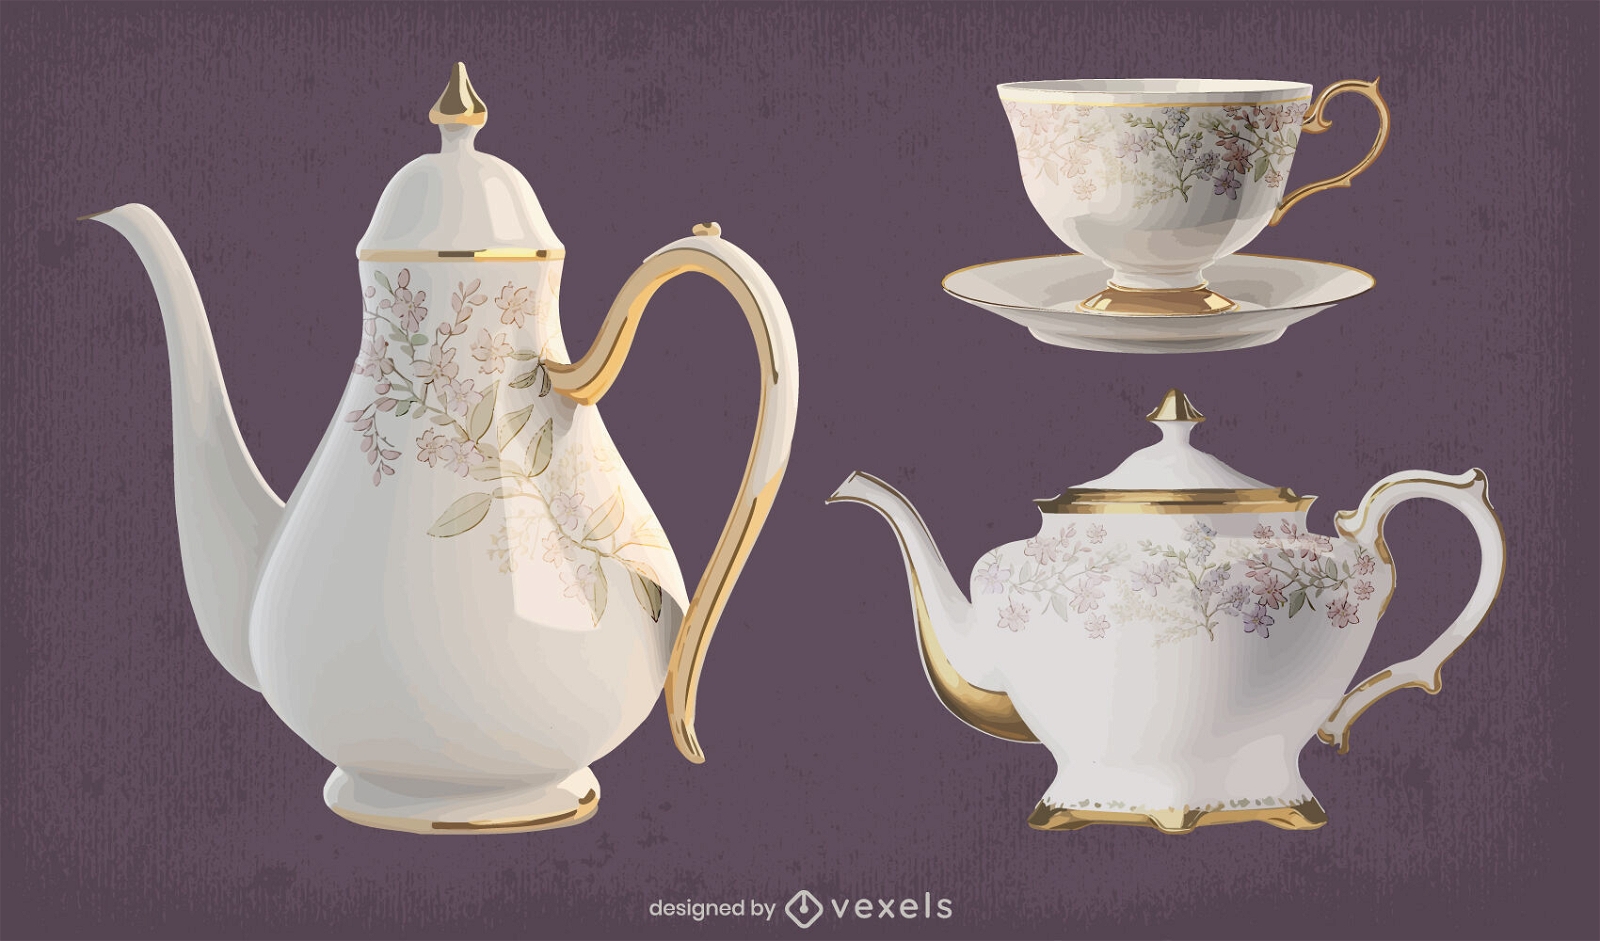 Fotografischer Stil der Teeservice-Keramik